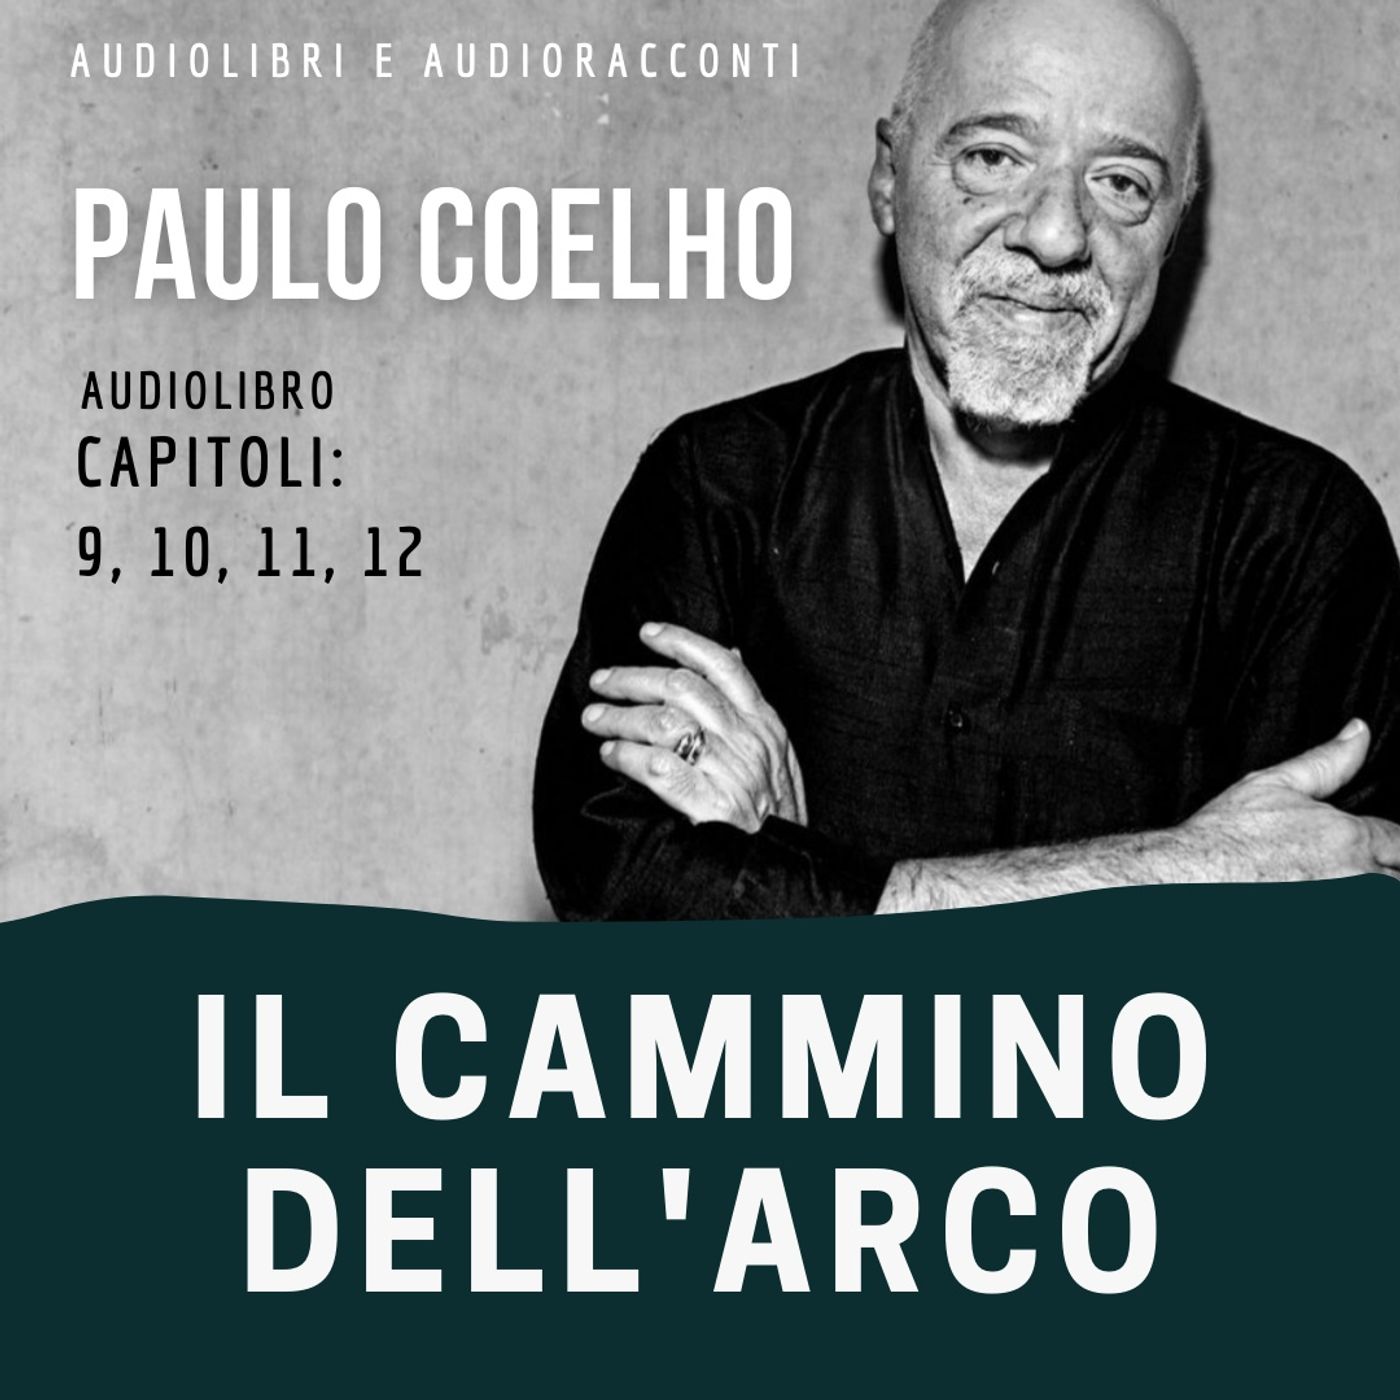 Il cammino dell'arco di Paulo Coelho [capitoli 9, 10, 11, 12] - Audiolibro